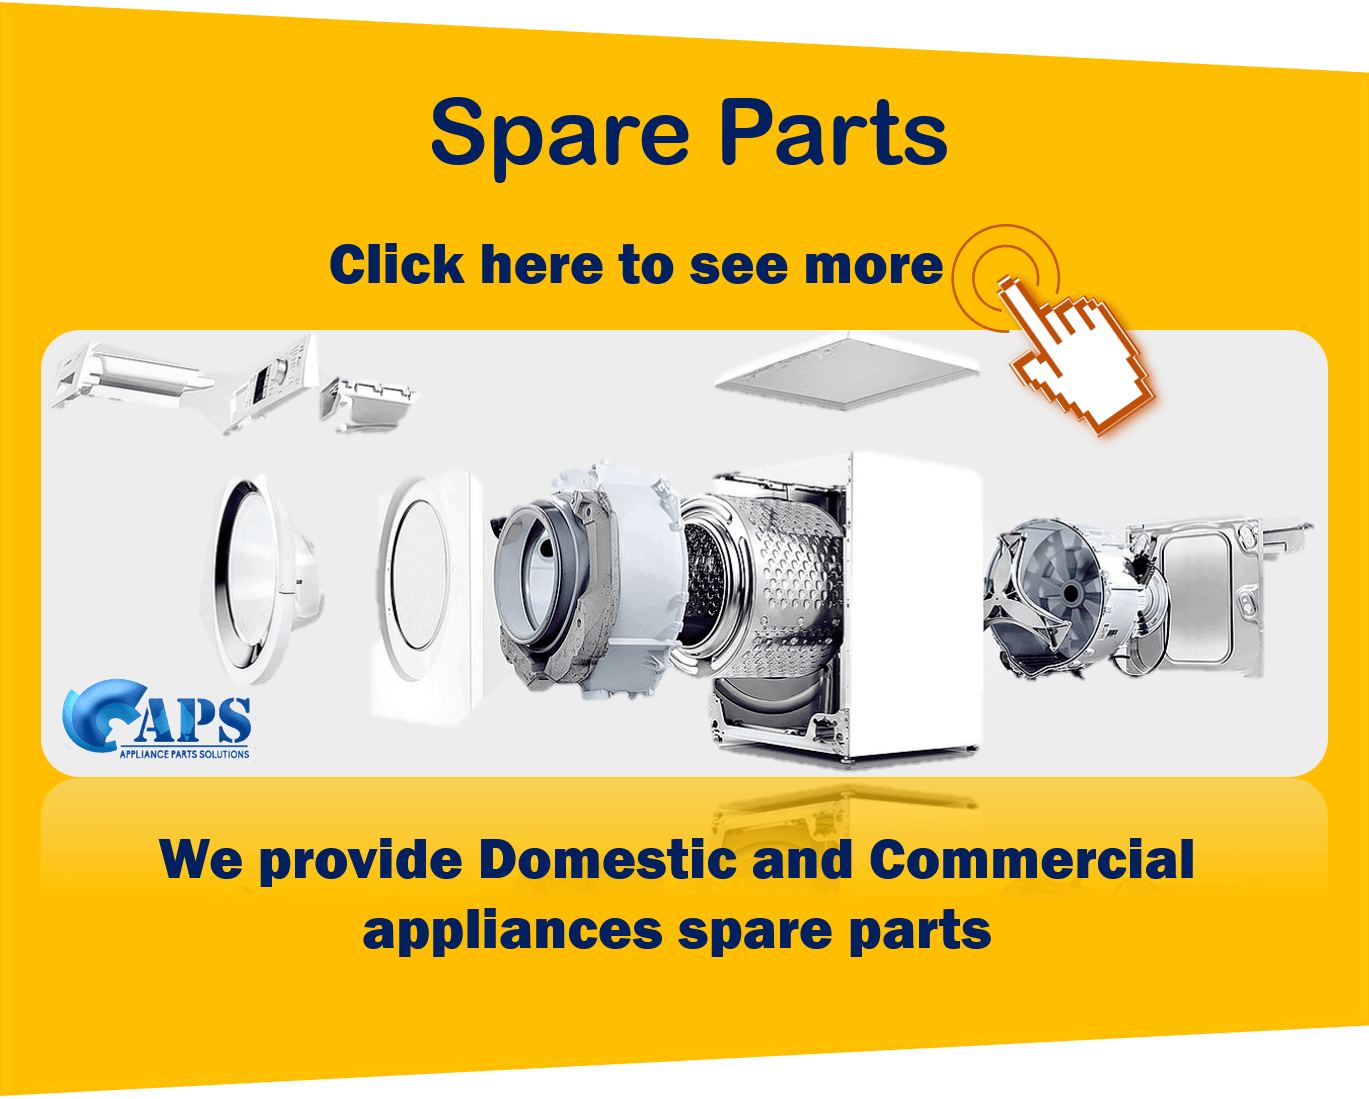 appliance spare parts supplier in perth wa